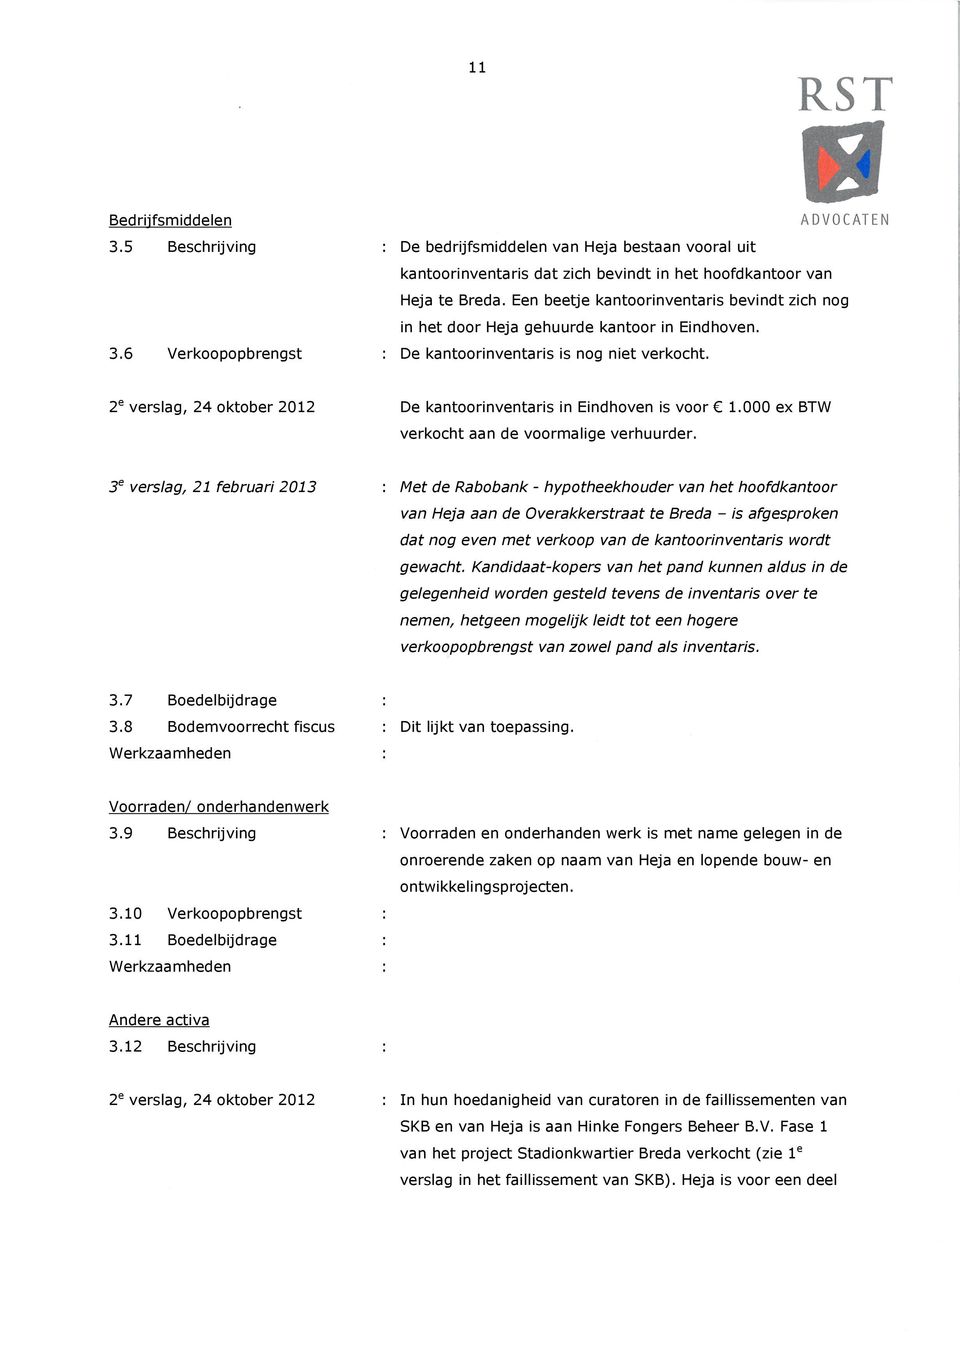 2 e verslag, 24 oktober 2012 De kantoorinventaris in Eindhoven is voor 1.000 ex BTW verkocht aan de voormalige verhuurder.